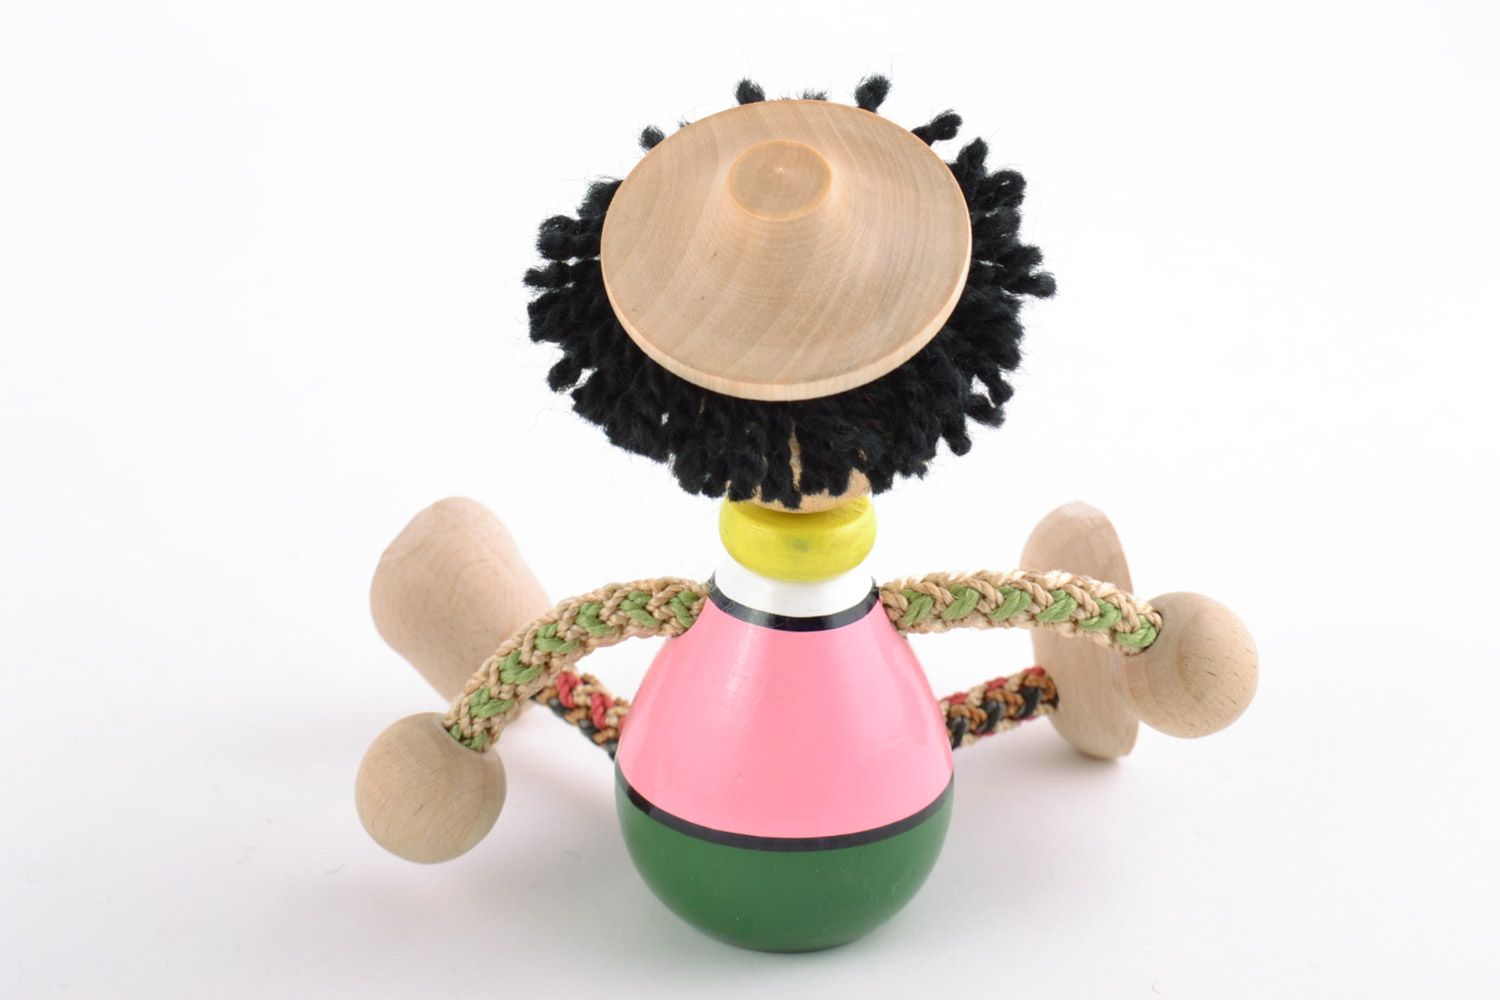 Öko Spielzeug aus Holz handmade umweltfreundlich künstlerisch Junge foto 5